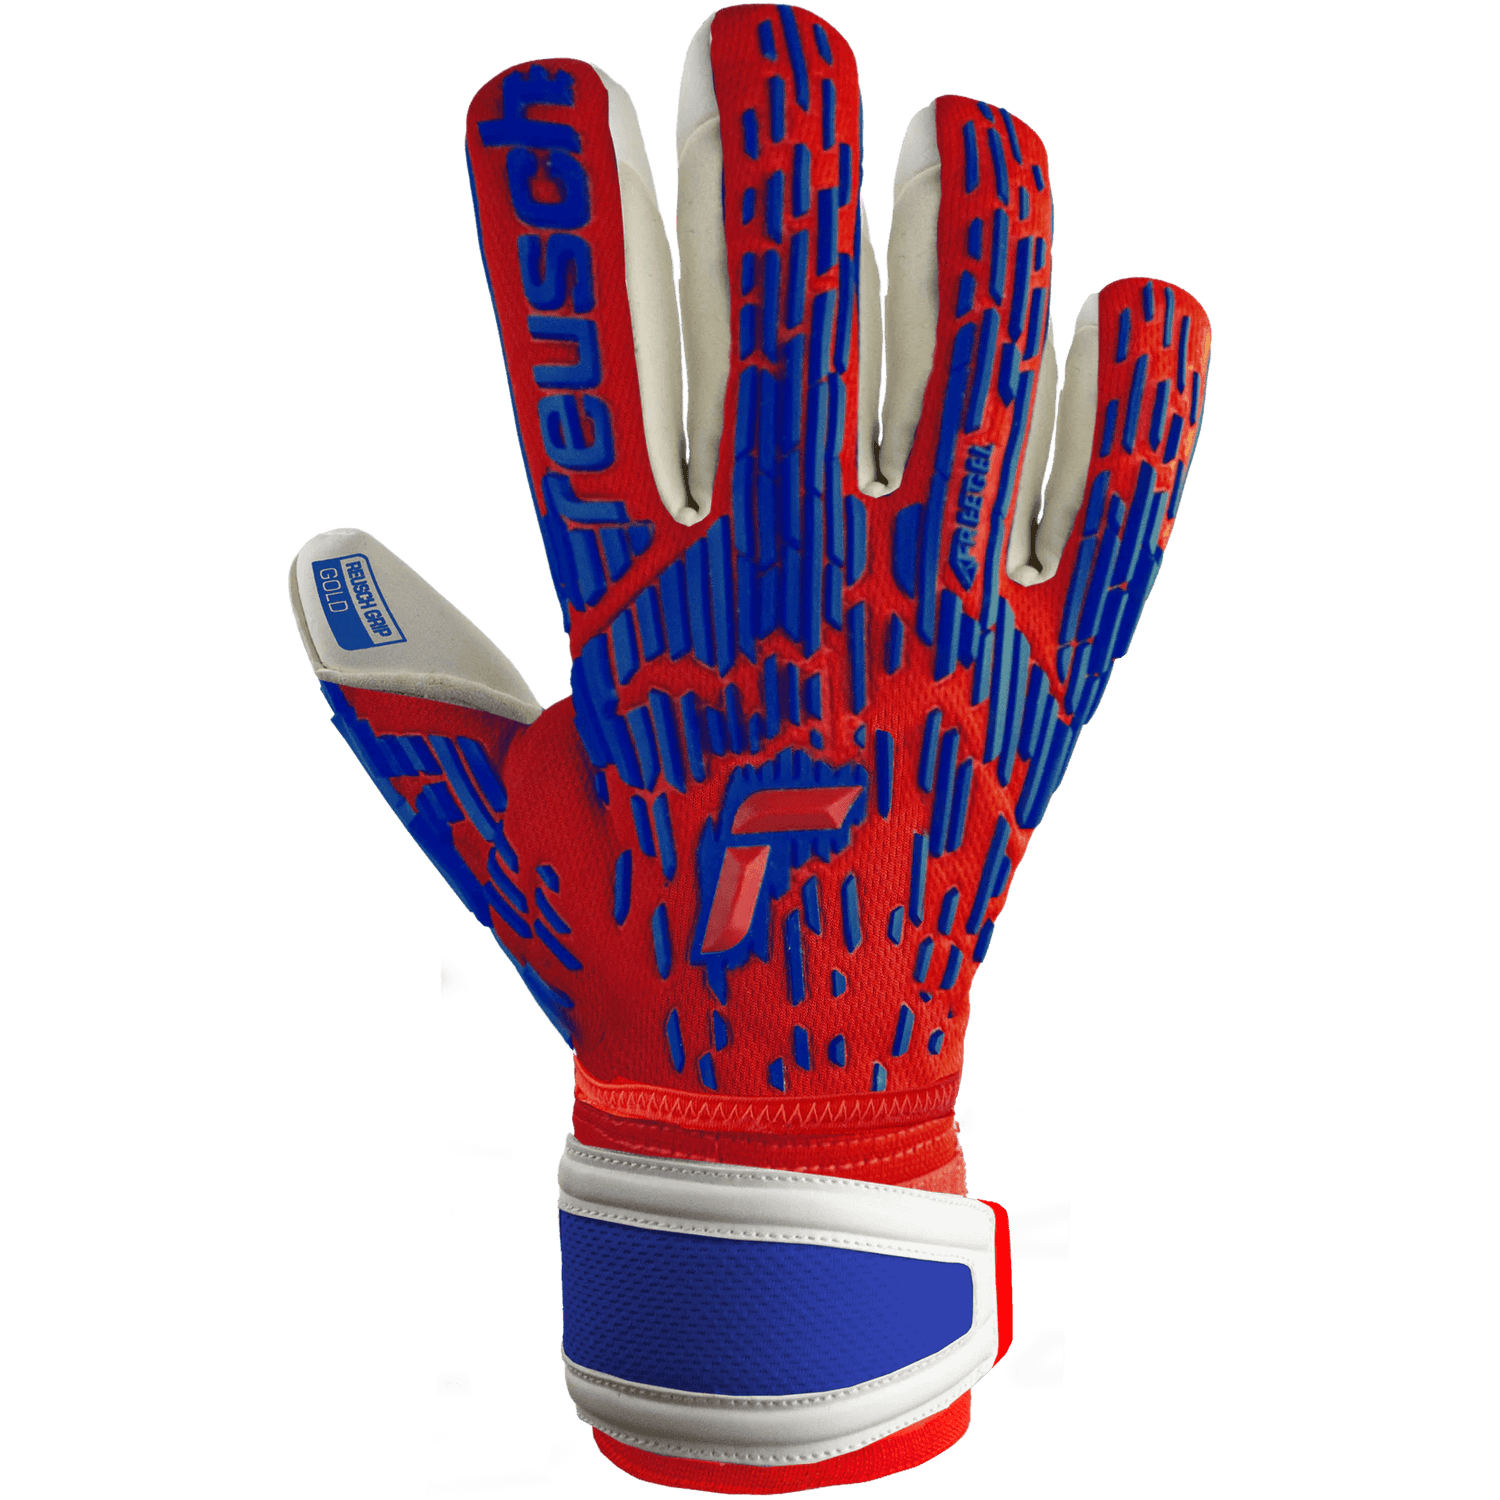 Reusch Attrakt Freegel Gold Finger Support Goalkeeper Gloves (Single - Outer)